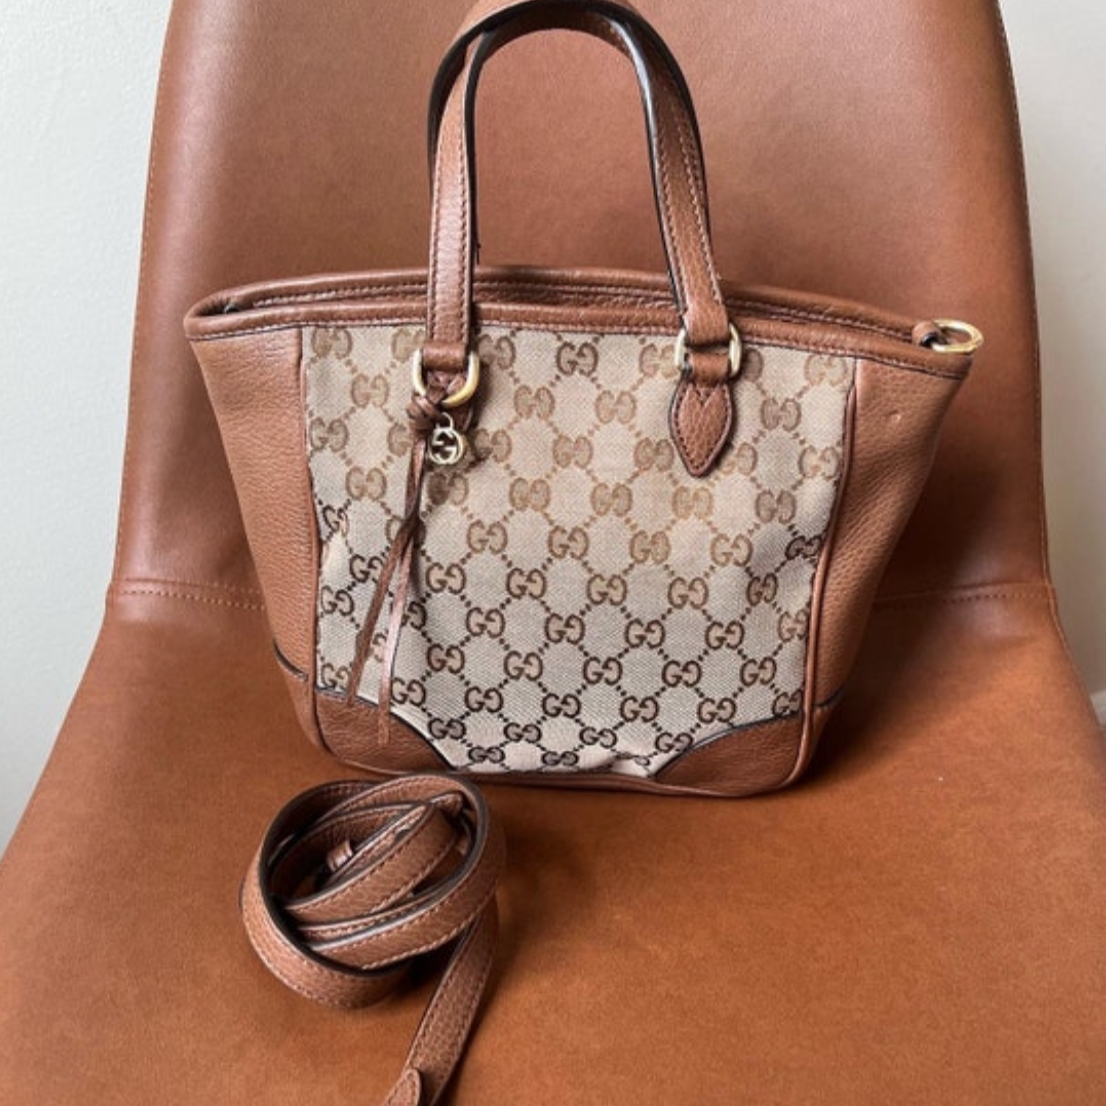 Gucci GG Supreme Canvas Tote Bag